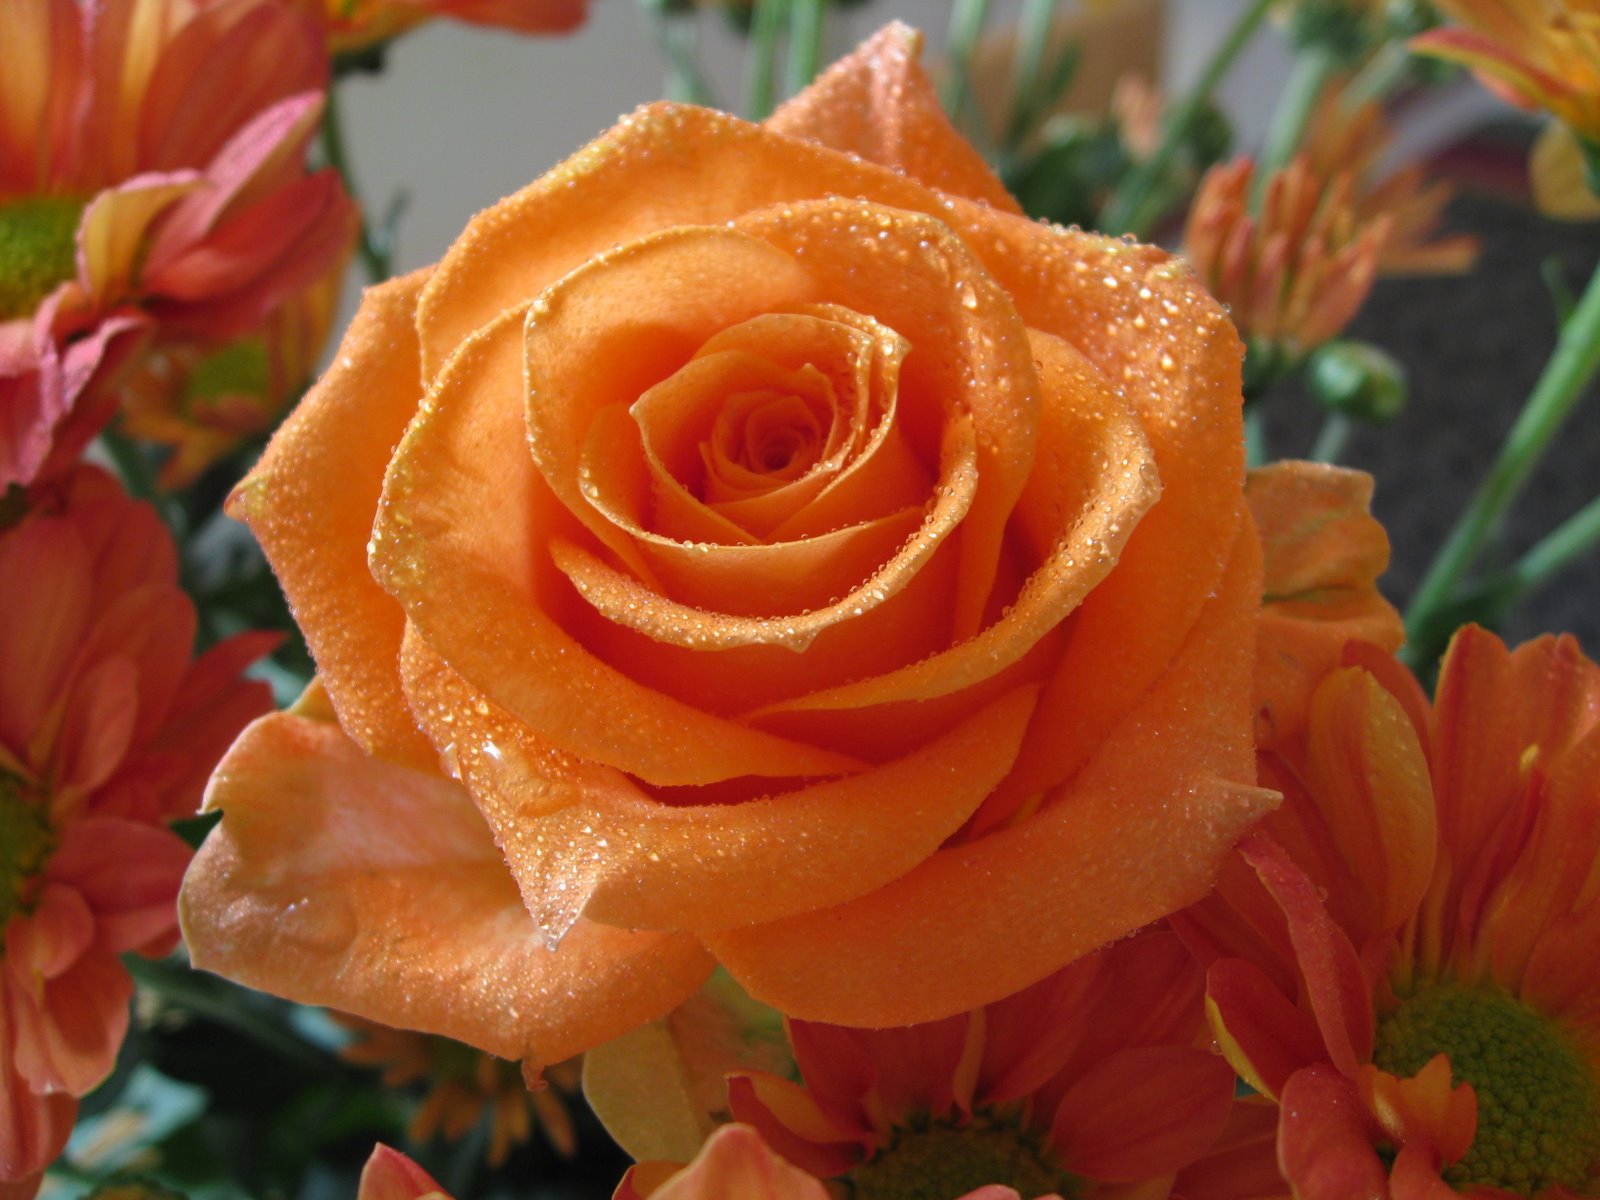 flowers for flower lovers.: Rose flowers.